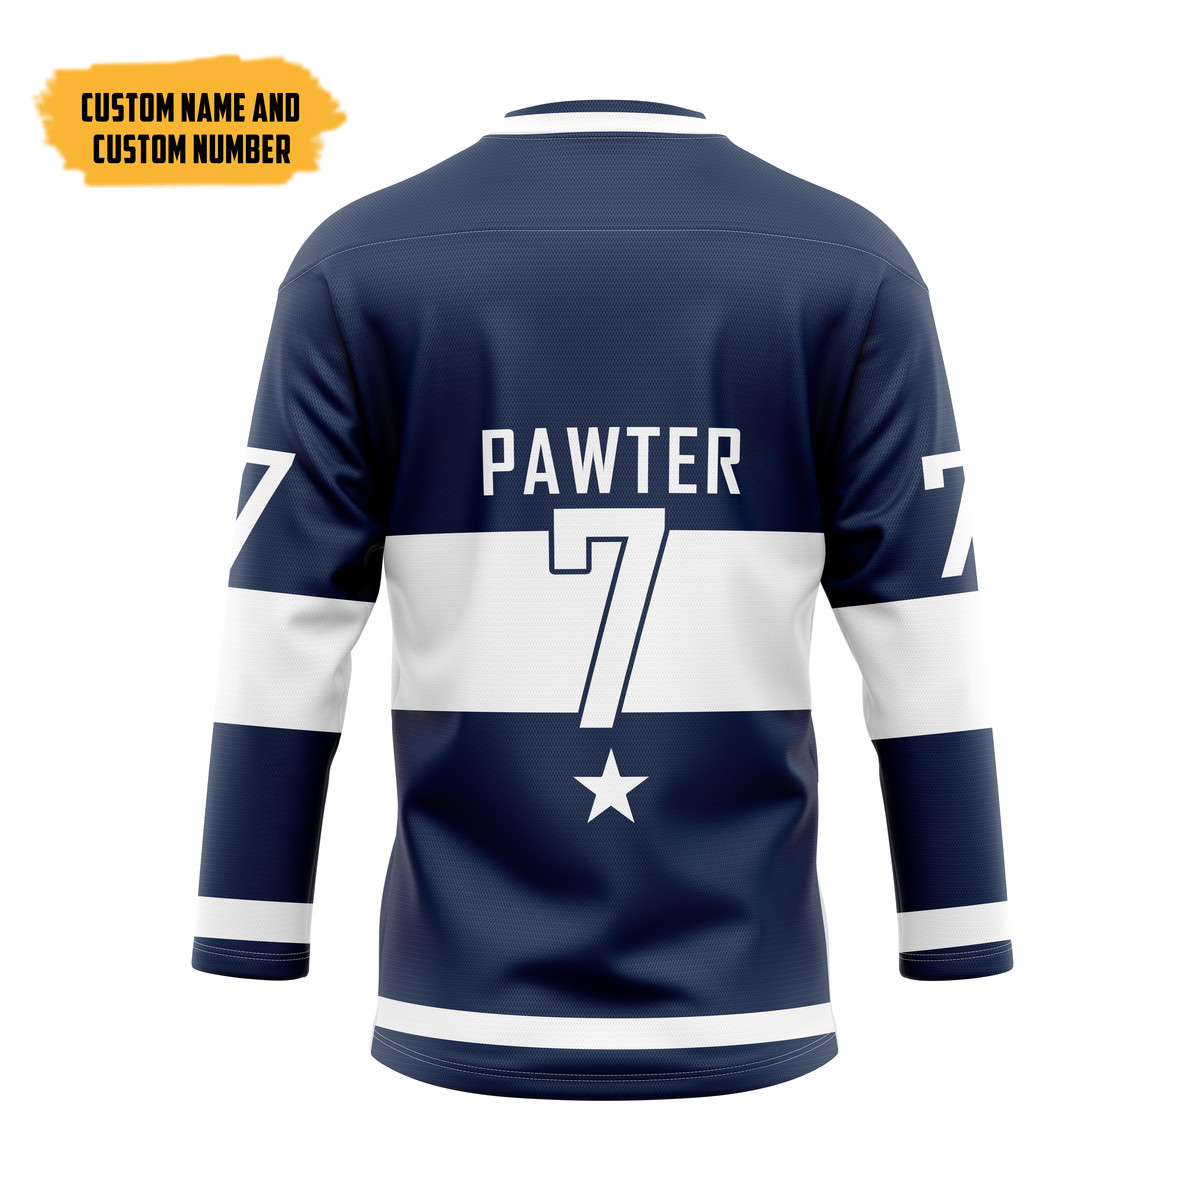 It's only $50 so don't miss out - Be sure to pick up a new hockey shirt today! 455